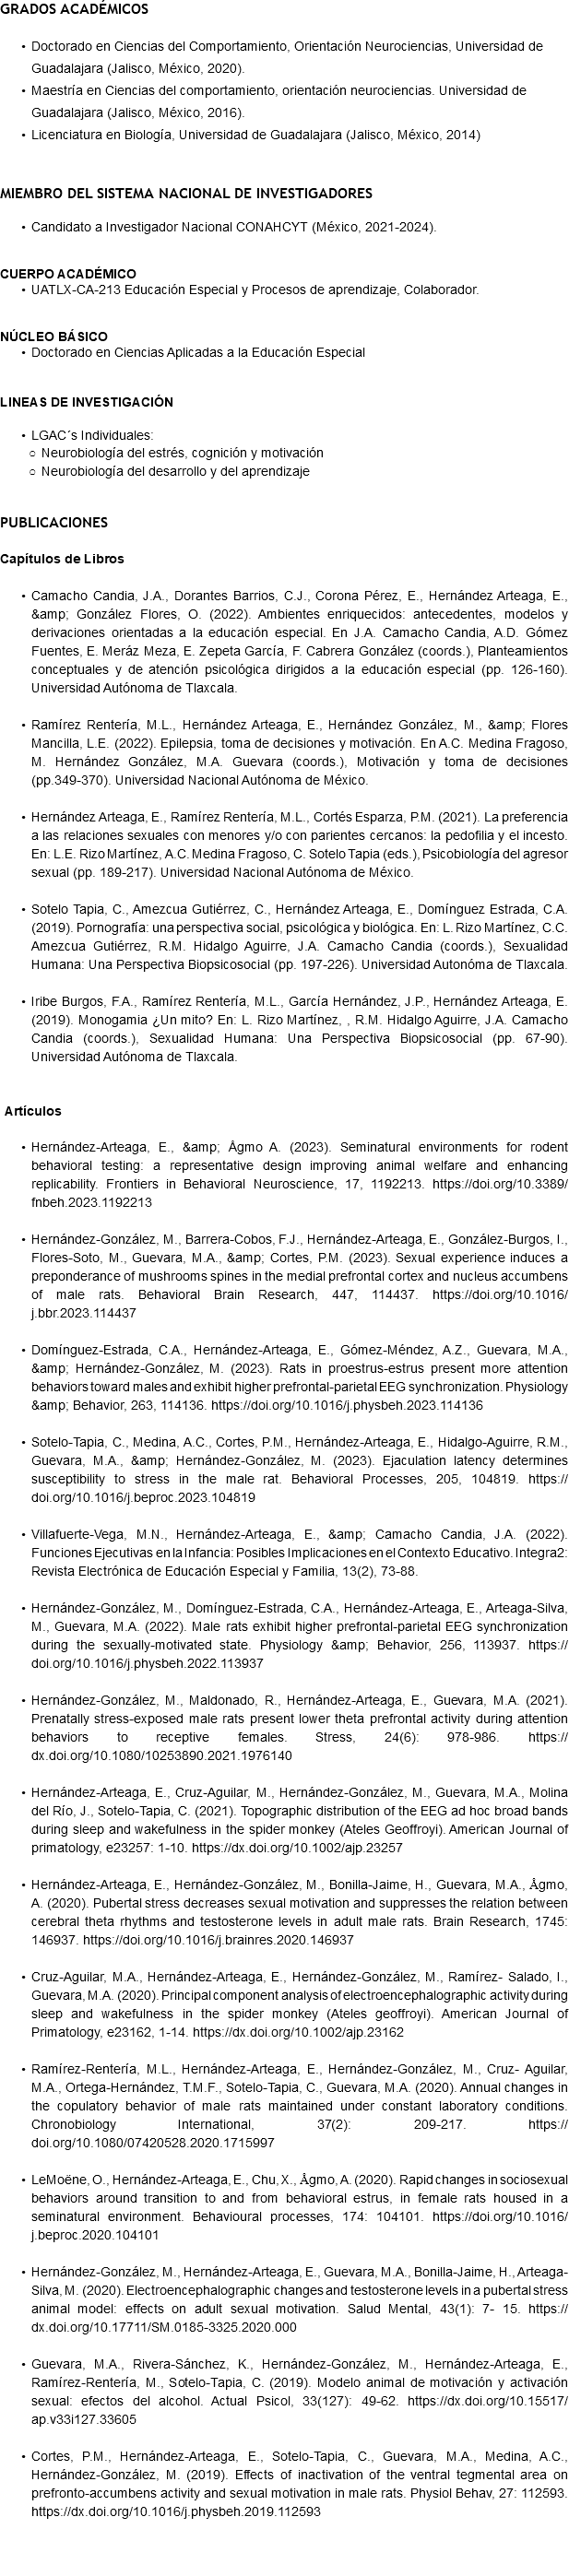 GRADOS ACADÉMICOS Doctorado en Ciencias del Comportamiento, Orientación Neurociencias, Universidad de Guadalajara (Jalisco, México, 2020). Maestría en Ciencias del comportamiento, orientación neurociencias. Universidad de Guadalajara (Jalisco, México, 2016). Licenciatura en Biología, Universidad de Guadalajara (Jalisco, México, 2014) MIEMBRO DEL SISTEMA NACIONAL DE INVESTIGADORES Candidato a Investigador Nacional CONAHCYT (México, 2021-2024). CUERPO ACADÉMICO UATLX-CA-213 Educación Especial y Procesos de aprendizaje, Colaborador. NÚCLEO BÁSICO Doctorado en Ciencias Aplicadas a la Educación Especial LINEAS DE INVESTIGACIÓN LGAC´s Individuales: Neurobiología del estrés, cognición y motivación Neurobiología del desarrollo y del aprendizaje PUBLICACIONES Capítulos de Libros Camacho Candia, J.A., Dorantes Barrios, C.J., Corona Pérez, E., Hernández Arteaga, E., &amp; González Flores, O. (2022). Ambientes enriquecidos: antecedentes, modelos y derivaciones orientadas a la educación especial. En J.A. Camacho Candia, A.D. Gómez Fuentes, E. Meráz Meza, E. Zepeta García, F. Cabrera González (coords.), Planteamientos conceptuales y de atención psicológica dirigidos a la educación especial (pp. 126-160). Universidad Autónoma de Tlaxcala. Ramírez Rentería, M.L., Hernández Arteaga, E., Hernández González, M., &amp; Flores Mancilla, L.E. (2022). Epilepsia, toma de decisiones y motivación. En A.C. Medina Fragoso, M. Hernández González, M.A. Guevara (coords.), Motivación y toma de decisiones (pp.349-370). Universidad Nacional Autónoma de México. Hernández Arteaga, E., Ramírez Rentería, M.L., Cortés Esparza, P.M. (2021). La preferencia a las relaciones sexuales con menores y/o con parientes cercanos: la pedofilia y el incesto. En: L.E. Rizo Martínez, A.C. Medina Fragoso, C. Sotelo Tapia (eds.), Psicobiología del agresor sexual (pp. 189-217). Universidad Nacional Autónoma de México. Sotelo Tapia, C., Amezcua Gutiérrez, C., Hernández Arteaga, E., Domínguez Estrada, C.A. (2019). Pornografía: una perspectiva social, psicológica y biológica. En: L. Rizo Martínez, C.C. Amezcua Gutiérrez, R.M. Hidalgo Aguirre, J.A. Camacho Candia (coords.), Sexualidad Humana: Una Perspectiva Biopsicosocial (pp. 197-226). Universidad Autonóma de Tlaxcala. Iribe Burgos, F.A., Ramírez Rentería, M.L., García Hernández, J.P., Hernández Arteaga, E. (2019). Monogamia ¿Un mito? En: L. Rizo Martínez, , R.M. Hidalgo Aguirre, J.A. Camacho Candia (coords.), Sexualidad Humana: Una Perspectiva Biopsicosocial (pp. 67-90). Universidad Autónoma de Tlaxcala. Artículos Hernández-Arteaga, E., &amp; Ågmo A. (2023). Seminatural environments for rodent behavioral testing: a representative design improving animal welfare and enhancing replicability. Frontiers in Behavioral Neuroscience, 17, 1192213. https://doi.org/10.3389/fnbeh.2023.1192213 Hernández-González, M., Barrera-Cobos, F.J., Hernández-Arteaga, E., González-Burgos, I., Flores-Soto, M., Guevara, M.A., &amp; Cortes, P.M. (2023). Sexual experience induces a preponderance of mushrooms spines in the medial prefrontal cortex and nucleus accumbens of male rats. Behavioral Brain Research, 447, 114437. https://doi.org/10.1016/j.bbr.2023.114437 Domínguez-Estrada, C.A., Hernández-Arteaga, E., Gómez-Méndez, A.Z., Guevara, M.A., &amp; Hernández-González, M. (2023). Rats in proestrus-estrus present more attention behaviors toward males and exhibit higher prefrontal-parietal EEG synchronization. Physiology &amp; Behavior, 263, 114136. https://doi.org/10.1016/j.physbeh.2023.114136 Sotelo-Tapia, C., Medina, A.C., Cortes, P.M., Hernández-Arteaga, E., Hidalgo-Aguirre, R.M., Guevara, M.A., &amp; Hernández-González, M. (2023). Ejaculation latency determines susceptibility to stress in the male rat. Behavioral Processes, 205, 104819. https://doi.org/10.1016/j.beproc.2023.104819 Villafuerte-Vega, M.N., Hernández-Arteaga, E., &amp; Camacho Candia, J.A. (2022). Funciones Ejecutivas en la Infancia: Posibles Implicaciones en el Contexto Educativo. Integra2: Revista Electrónica de Educación Especial y Familia, 13(2), 73-88. Hernández-González, M., Domínguez-Estrada, C.A., Hernández-Arteaga, E., Arteaga-Silva, M., Guevara, M.A. (2022). Male rats exhibit higher prefrontal-parietal EEG synchronization during the sexually-motivated state. Physiology &amp; Behavior, 256, 113937. https://doi.org/10.1016/j.physbeh.2022.113937 Hernández-González, M., Maldonado, R., Hernández-Arteaga, E., Guevara, M.A. (2021). Prenatally stress-exposed male rats present lower theta prefrontal activity during attention behaviors to receptive females. Stress, 24(6): 978-986. https://dx.doi.org/10.1080/10253890.2021.1976140 Hernández-Arteaga, E., Cruz-Aguilar, M., Hernández-González, M., Guevara, M.A., Molina del Río, J., Sotelo-Tapia, C. (2021). Topographic distribution of the EEG ad hoc broad bands during sleep and wakefulness in the spider monkey (Ateles Geoffroyi). American Journal of primatology, e23257: 1-10. https://dx.doi.org/10.1002/ajp.23257 Hernández-Arteaga, E., Hernández-González, M., Bonilla-Jaime, H., Guevara, M.A., Ågmo, A. (2020). Pubertal stress decreases sexual motivation and suppresses the relation between cerebral theta rhythms and testosterone levels in adult male rats. Brain Research, 1745: 146937. https://doi.org/10.1016/j.brainres.2020.146937 Cruz-Aguilar, M.A., Hernández-Arteaga, E., Hernández-González, M., Ramírez- Salado, I., Guevara, M.A. (2020). Principal component analysis of electroencephalographic activity during sleep and wakefulness in the spider monkey (Ateles geoffroyi). American Journal of Primatology, e23162, 1-14. https://dx.doi.org/10.1002/ajp.23162 Ramírez-Rentería, M.L., Hernández-Arteaga, E., Hernández-González, M., Cruz- Aguilar, M.A., Ortega-Hernández, T.M.F., Sotelo-Tapia, C., Guevara, M.A. (2020). Annual changes in the copulatory behavior of male rats maintained under constant laboratory conditions. Chronobiology International, 37(2): 209-217. https://doi.org/10.1080/07420528.2020.1715997 LeMoëne, O., Hernández-Arteaga, E., Chu, X., Ågmo, A. (2020). Rapid changes in sociosexual behaviors around transition to and from behavioral estrus, in female rats housed in a seminatural environment. Behavioural processes, 174: 104101. https://doi.org/10.1016/j.beproc.2020.104101 Hernández-González, M., Hernández-Arteaga, E., Guevara, M.A., Bonilla-Jaime, H., Arteaga-Silva, M. (2020). Electroencephalographic changes and testosterone levels in a pubertal stress animal model: effects on adult sexual motivation. Salud Mental, 43(1): 7- 15. https://dx.doi.org/10.17711/SM.0185-3325.2020.000 Guevara, M.A., Rivera-Sánchez, K., Hernández-González, M., Hernández-Arteaga, E., Ramírez-Rentería, M., Sotelo-Tapia, C. (2019). Modelo animal de motivación y activación sexual: efectos del alcohol. Actual Psicol, 33(127): 49-62. https://dx.doi.org/10.15517/ap.v33i127.33605 Cortes, P.M., Hernández-Arteaga, E., Sotelo-Tapia, C., Guevara, M.A., Medina, A.C., Hernández-González, M. (2019). Effects of inactivation of the ventral tegmental area on prefronto-accumbens activity and sexual motivation in male rats. Physiol Behav, 27: 112593. https://dx.doi.org/10.1016/j.physbeh.2019.112593 